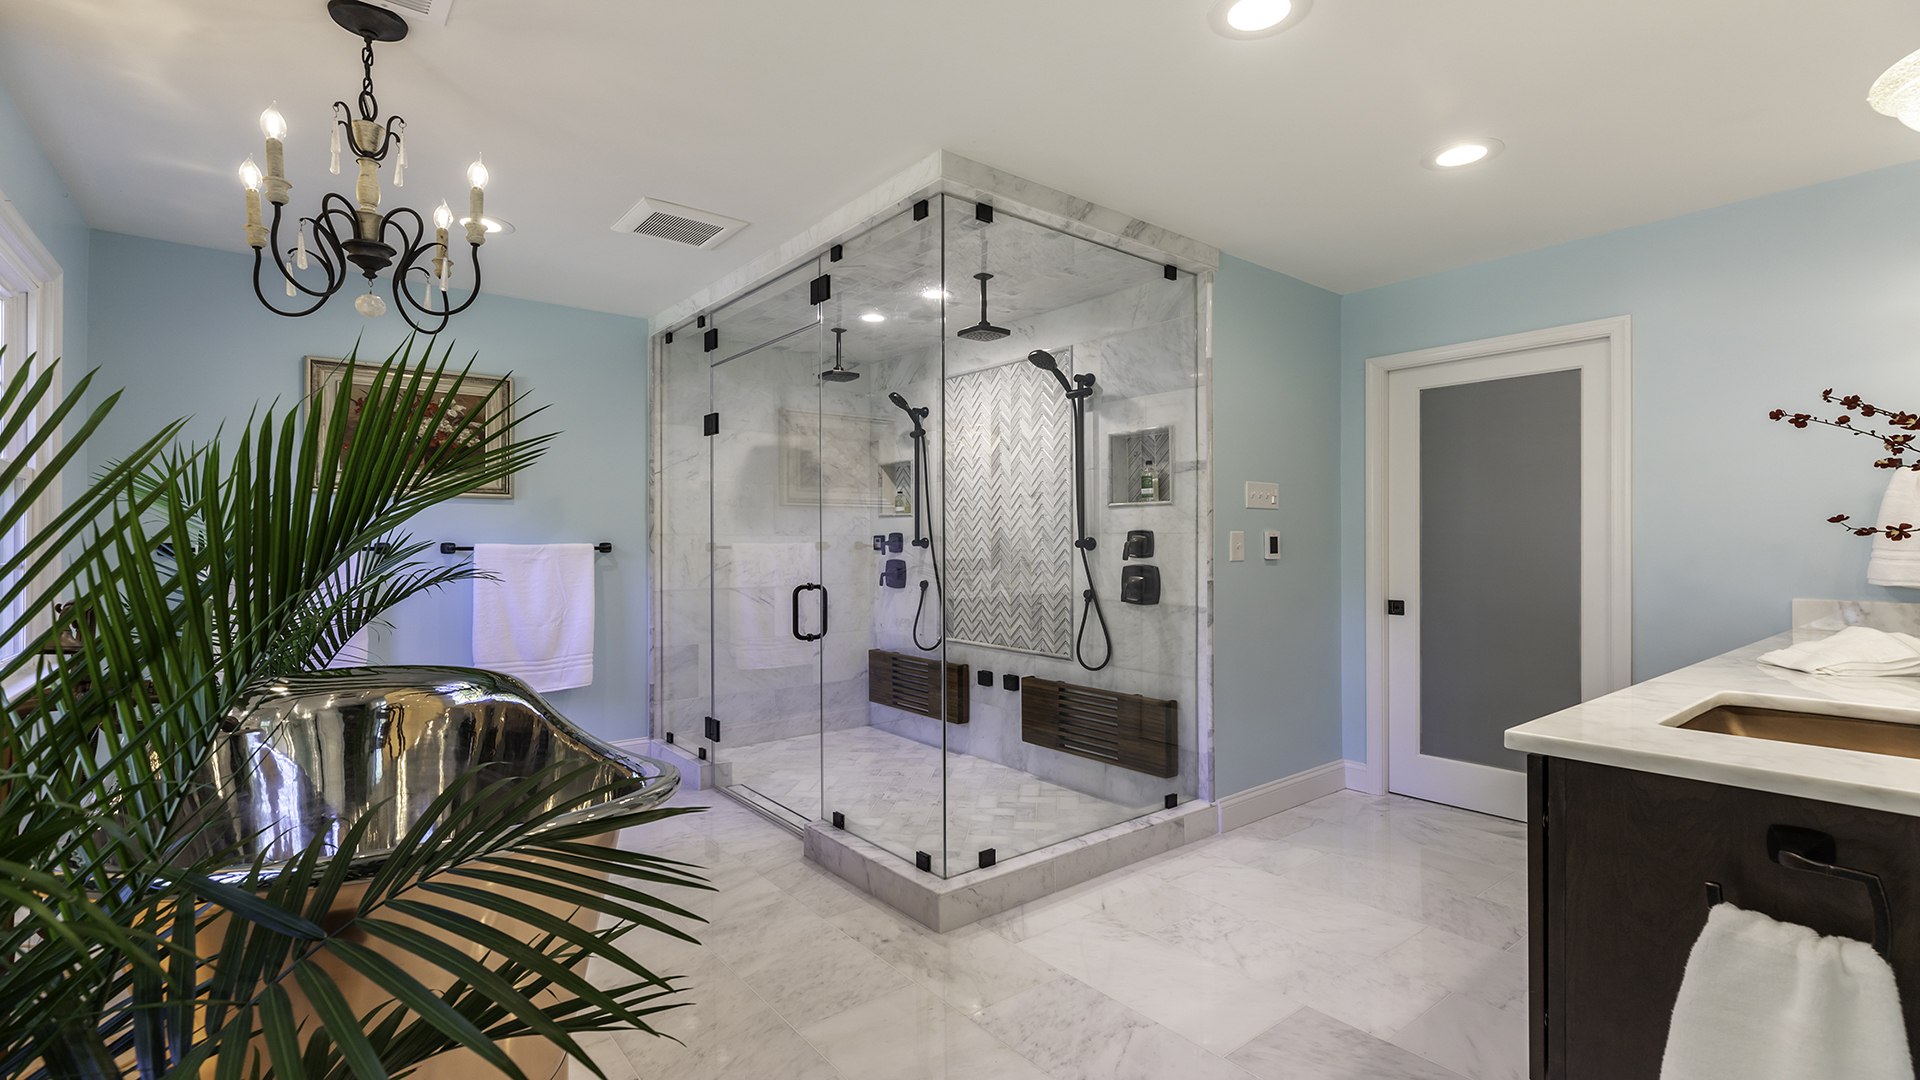 2021 Qualified Remodeler, Master Design Awards, Silver  Bathroom $50,000 to $75,000